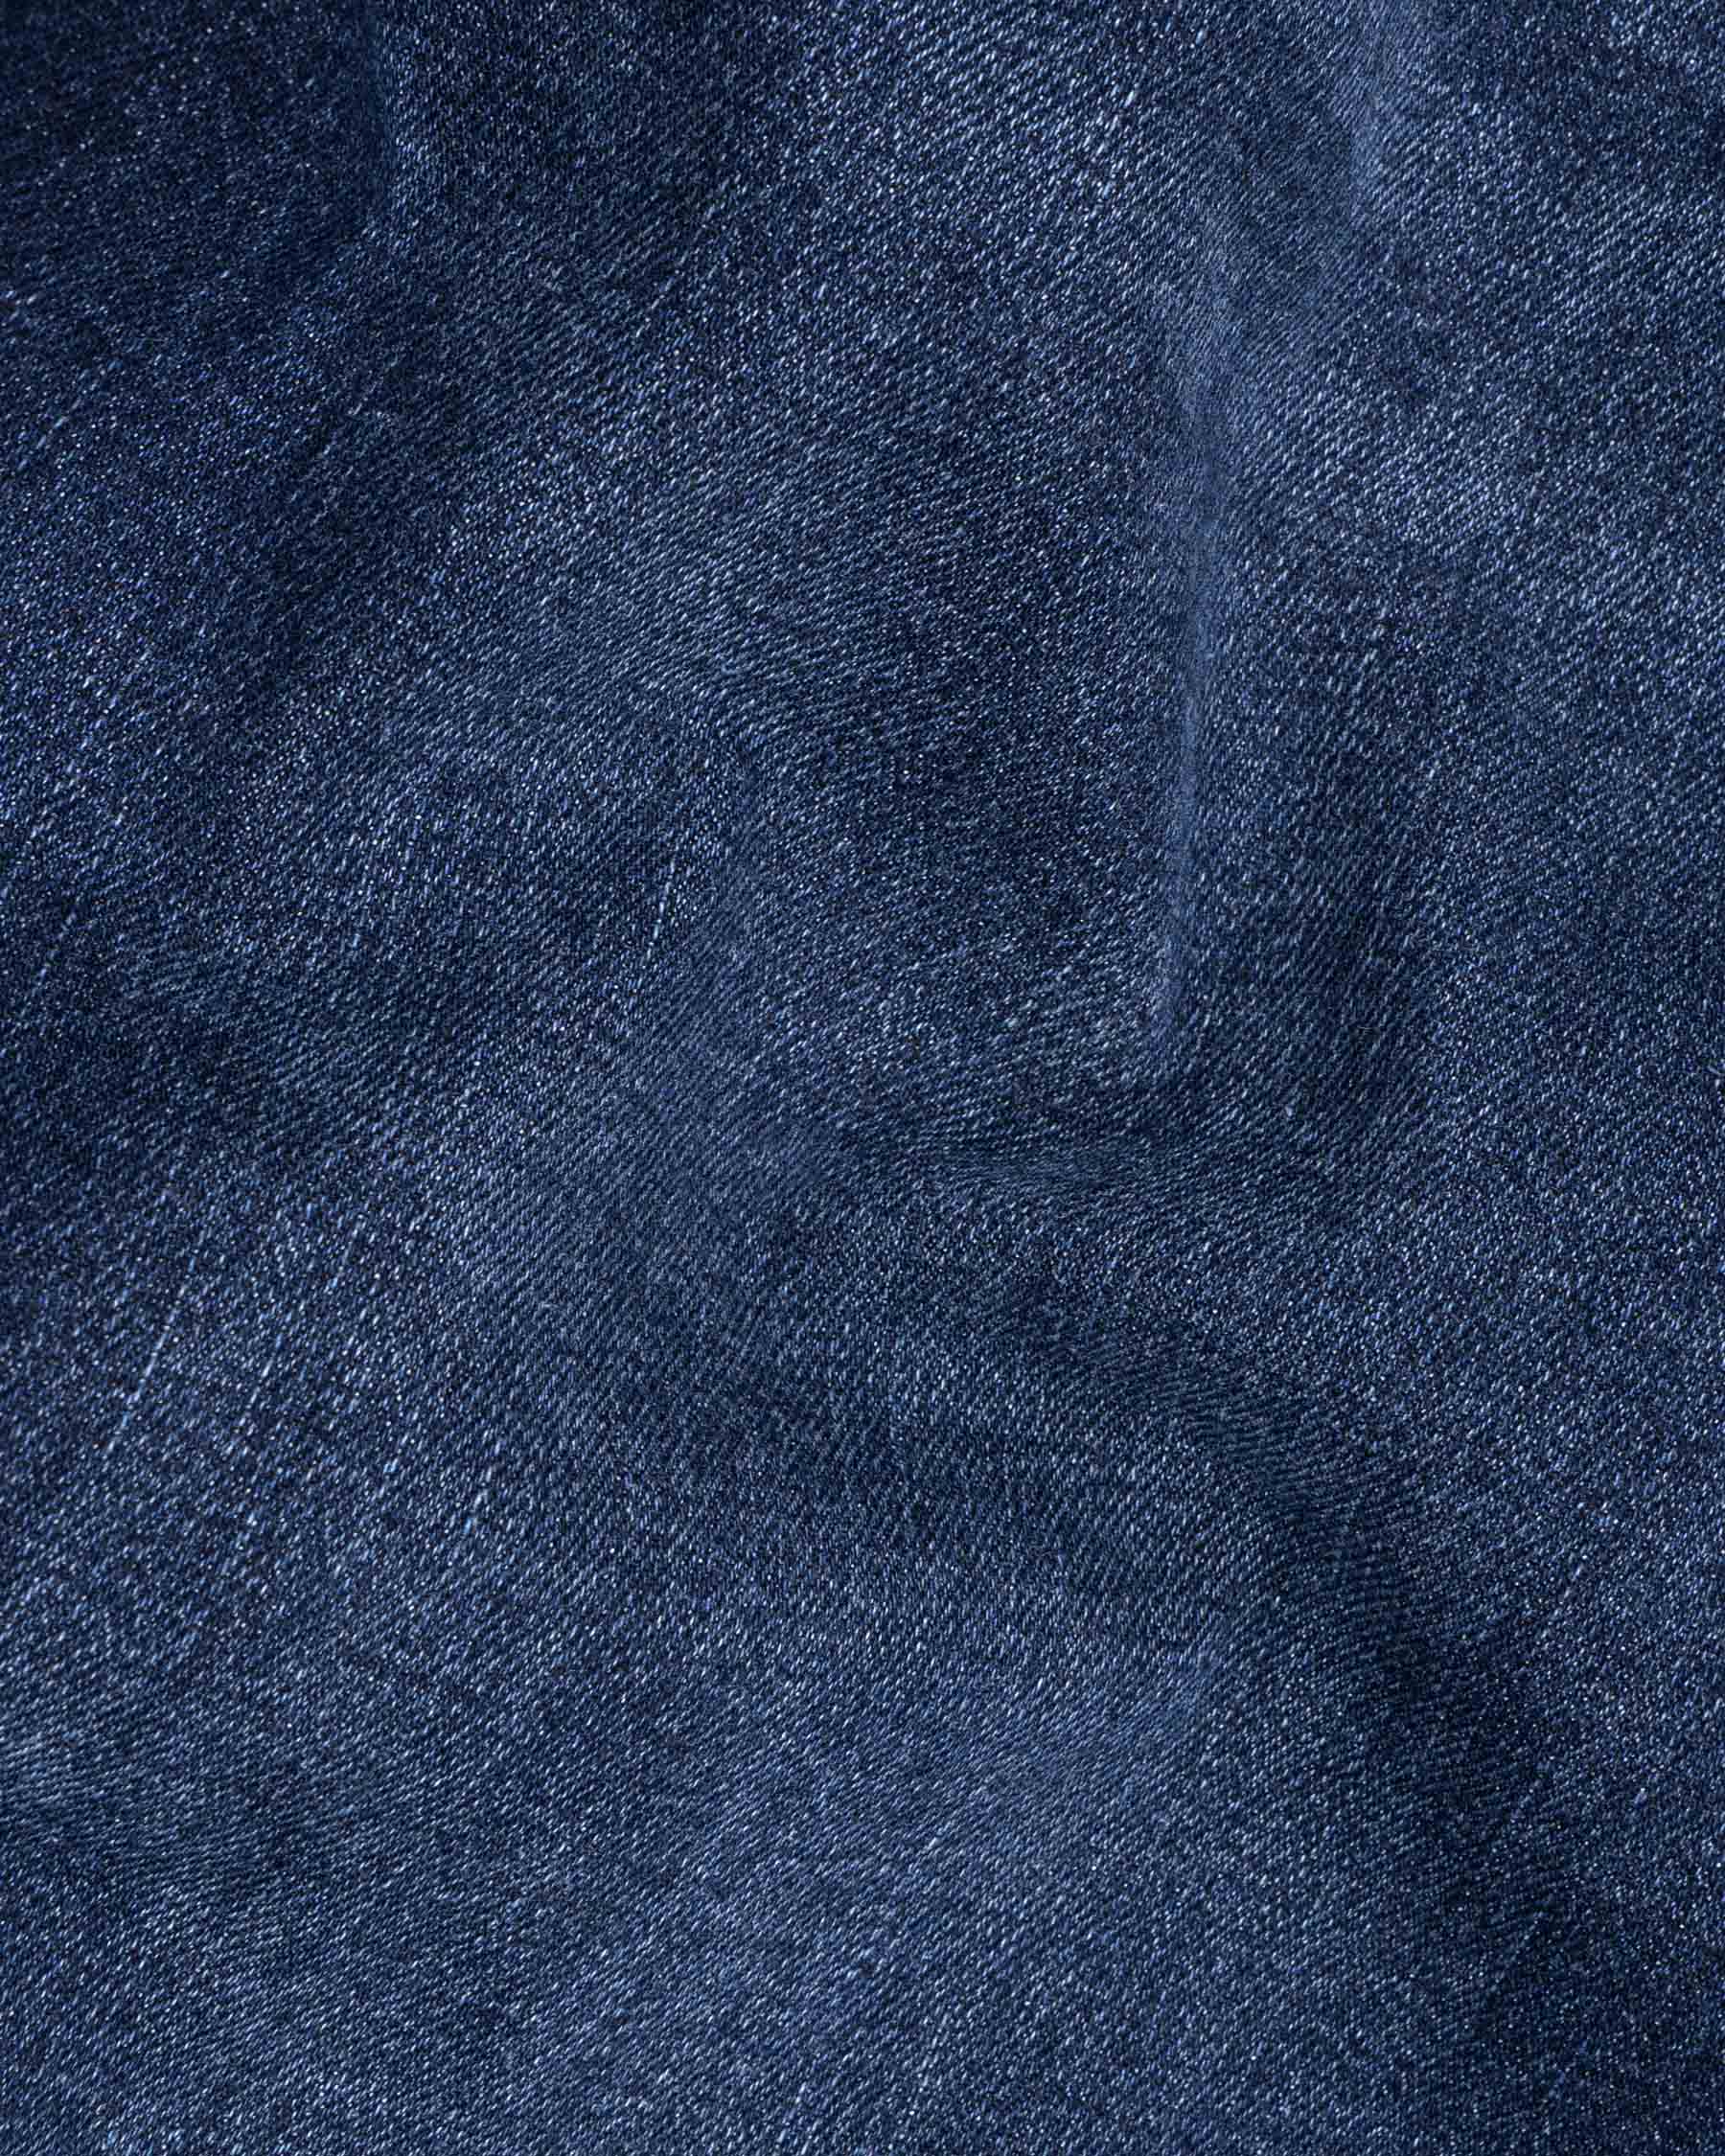 San Juan Blue Whiskering washed Mildly Distressed Stretchable Denim J135-32, J135-34, J135-36, J135-38, J135-40